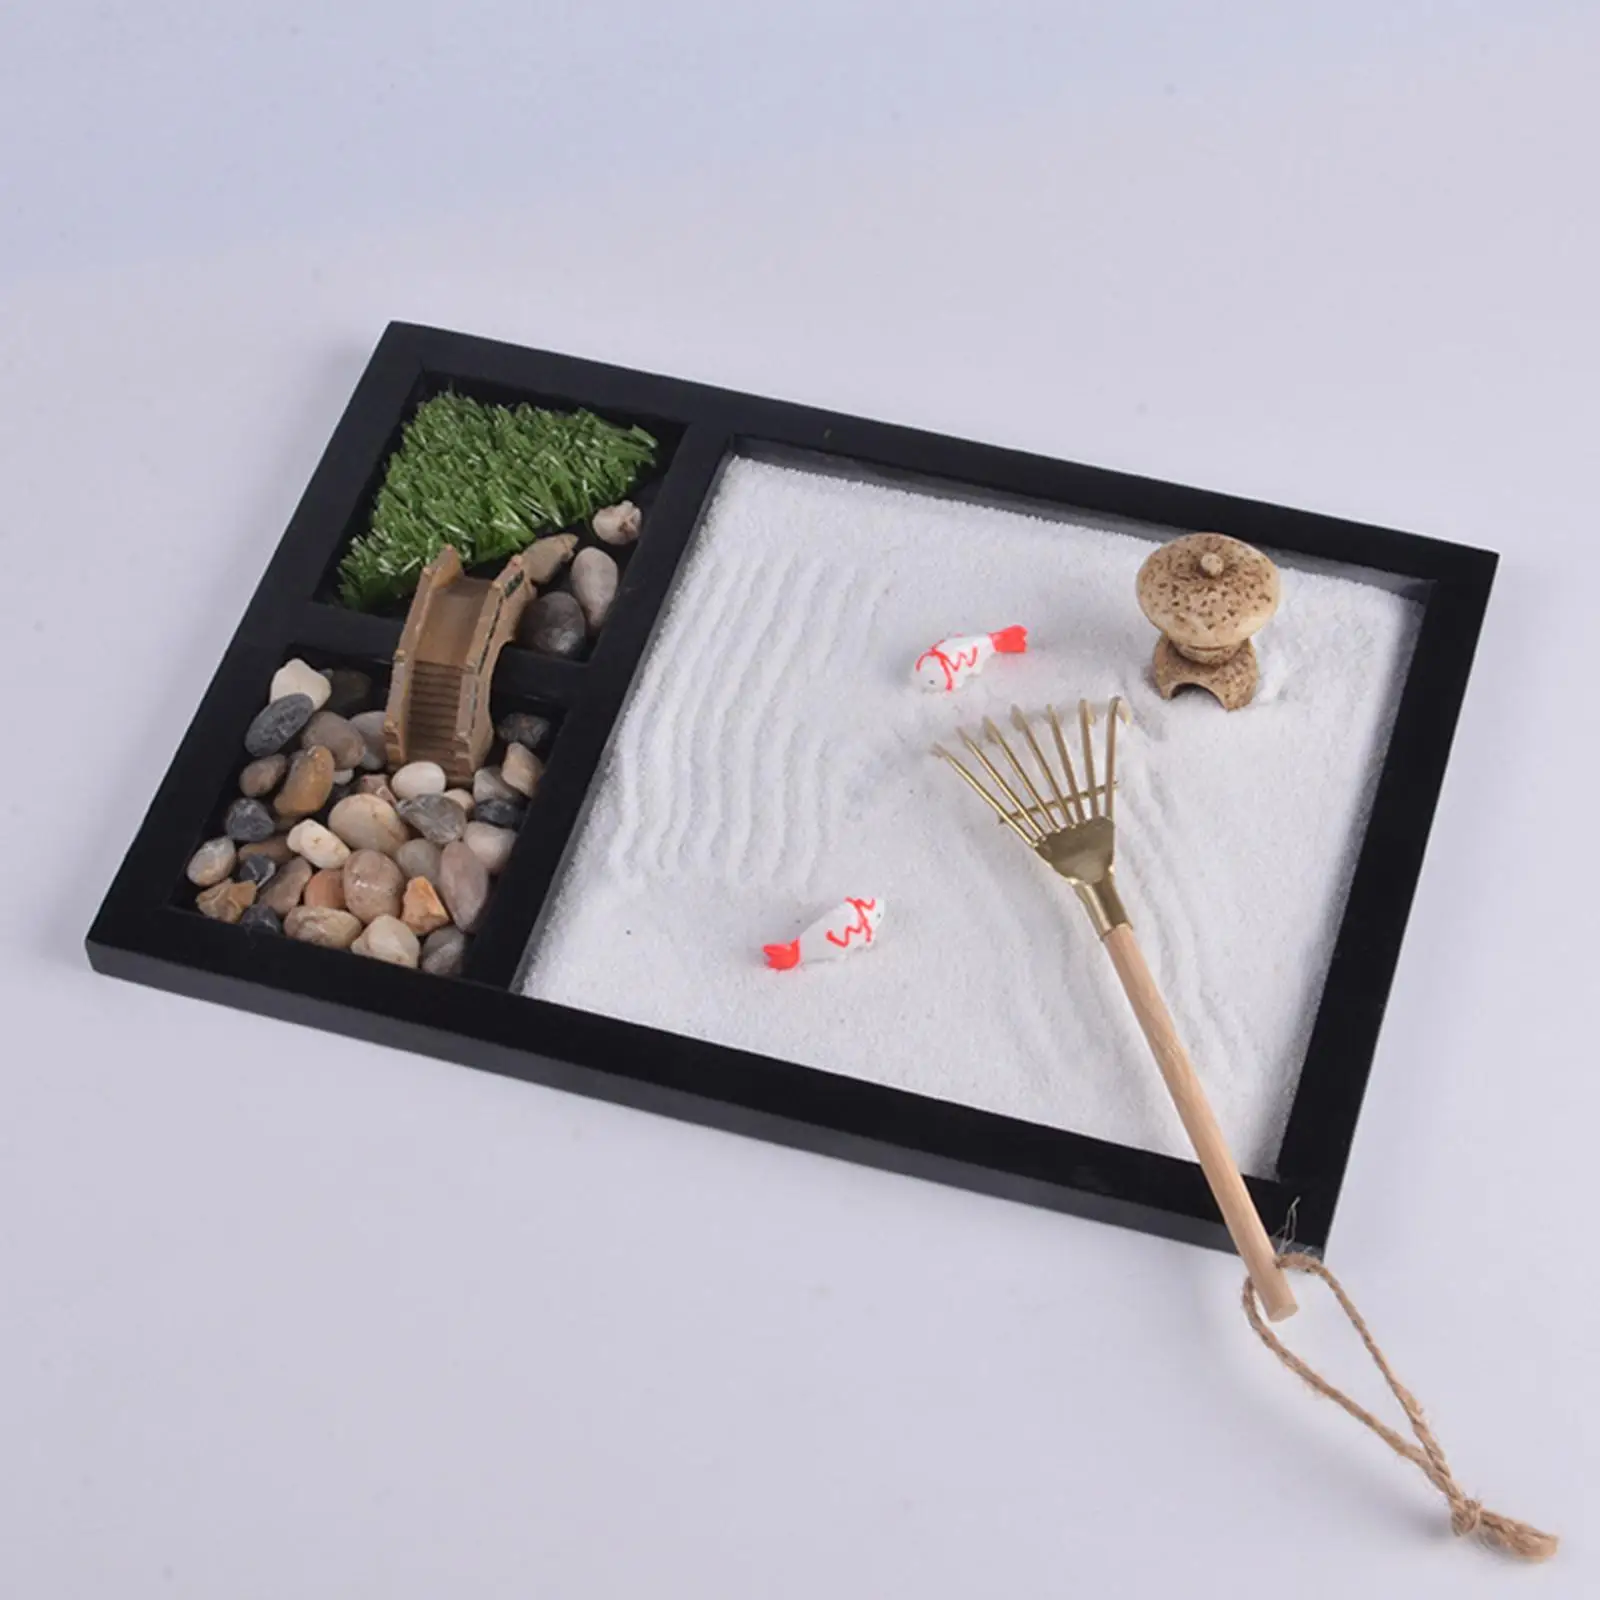 Japanese Zen Garden Kit for Desk Office Table Mini Zen Sand Garden Kit